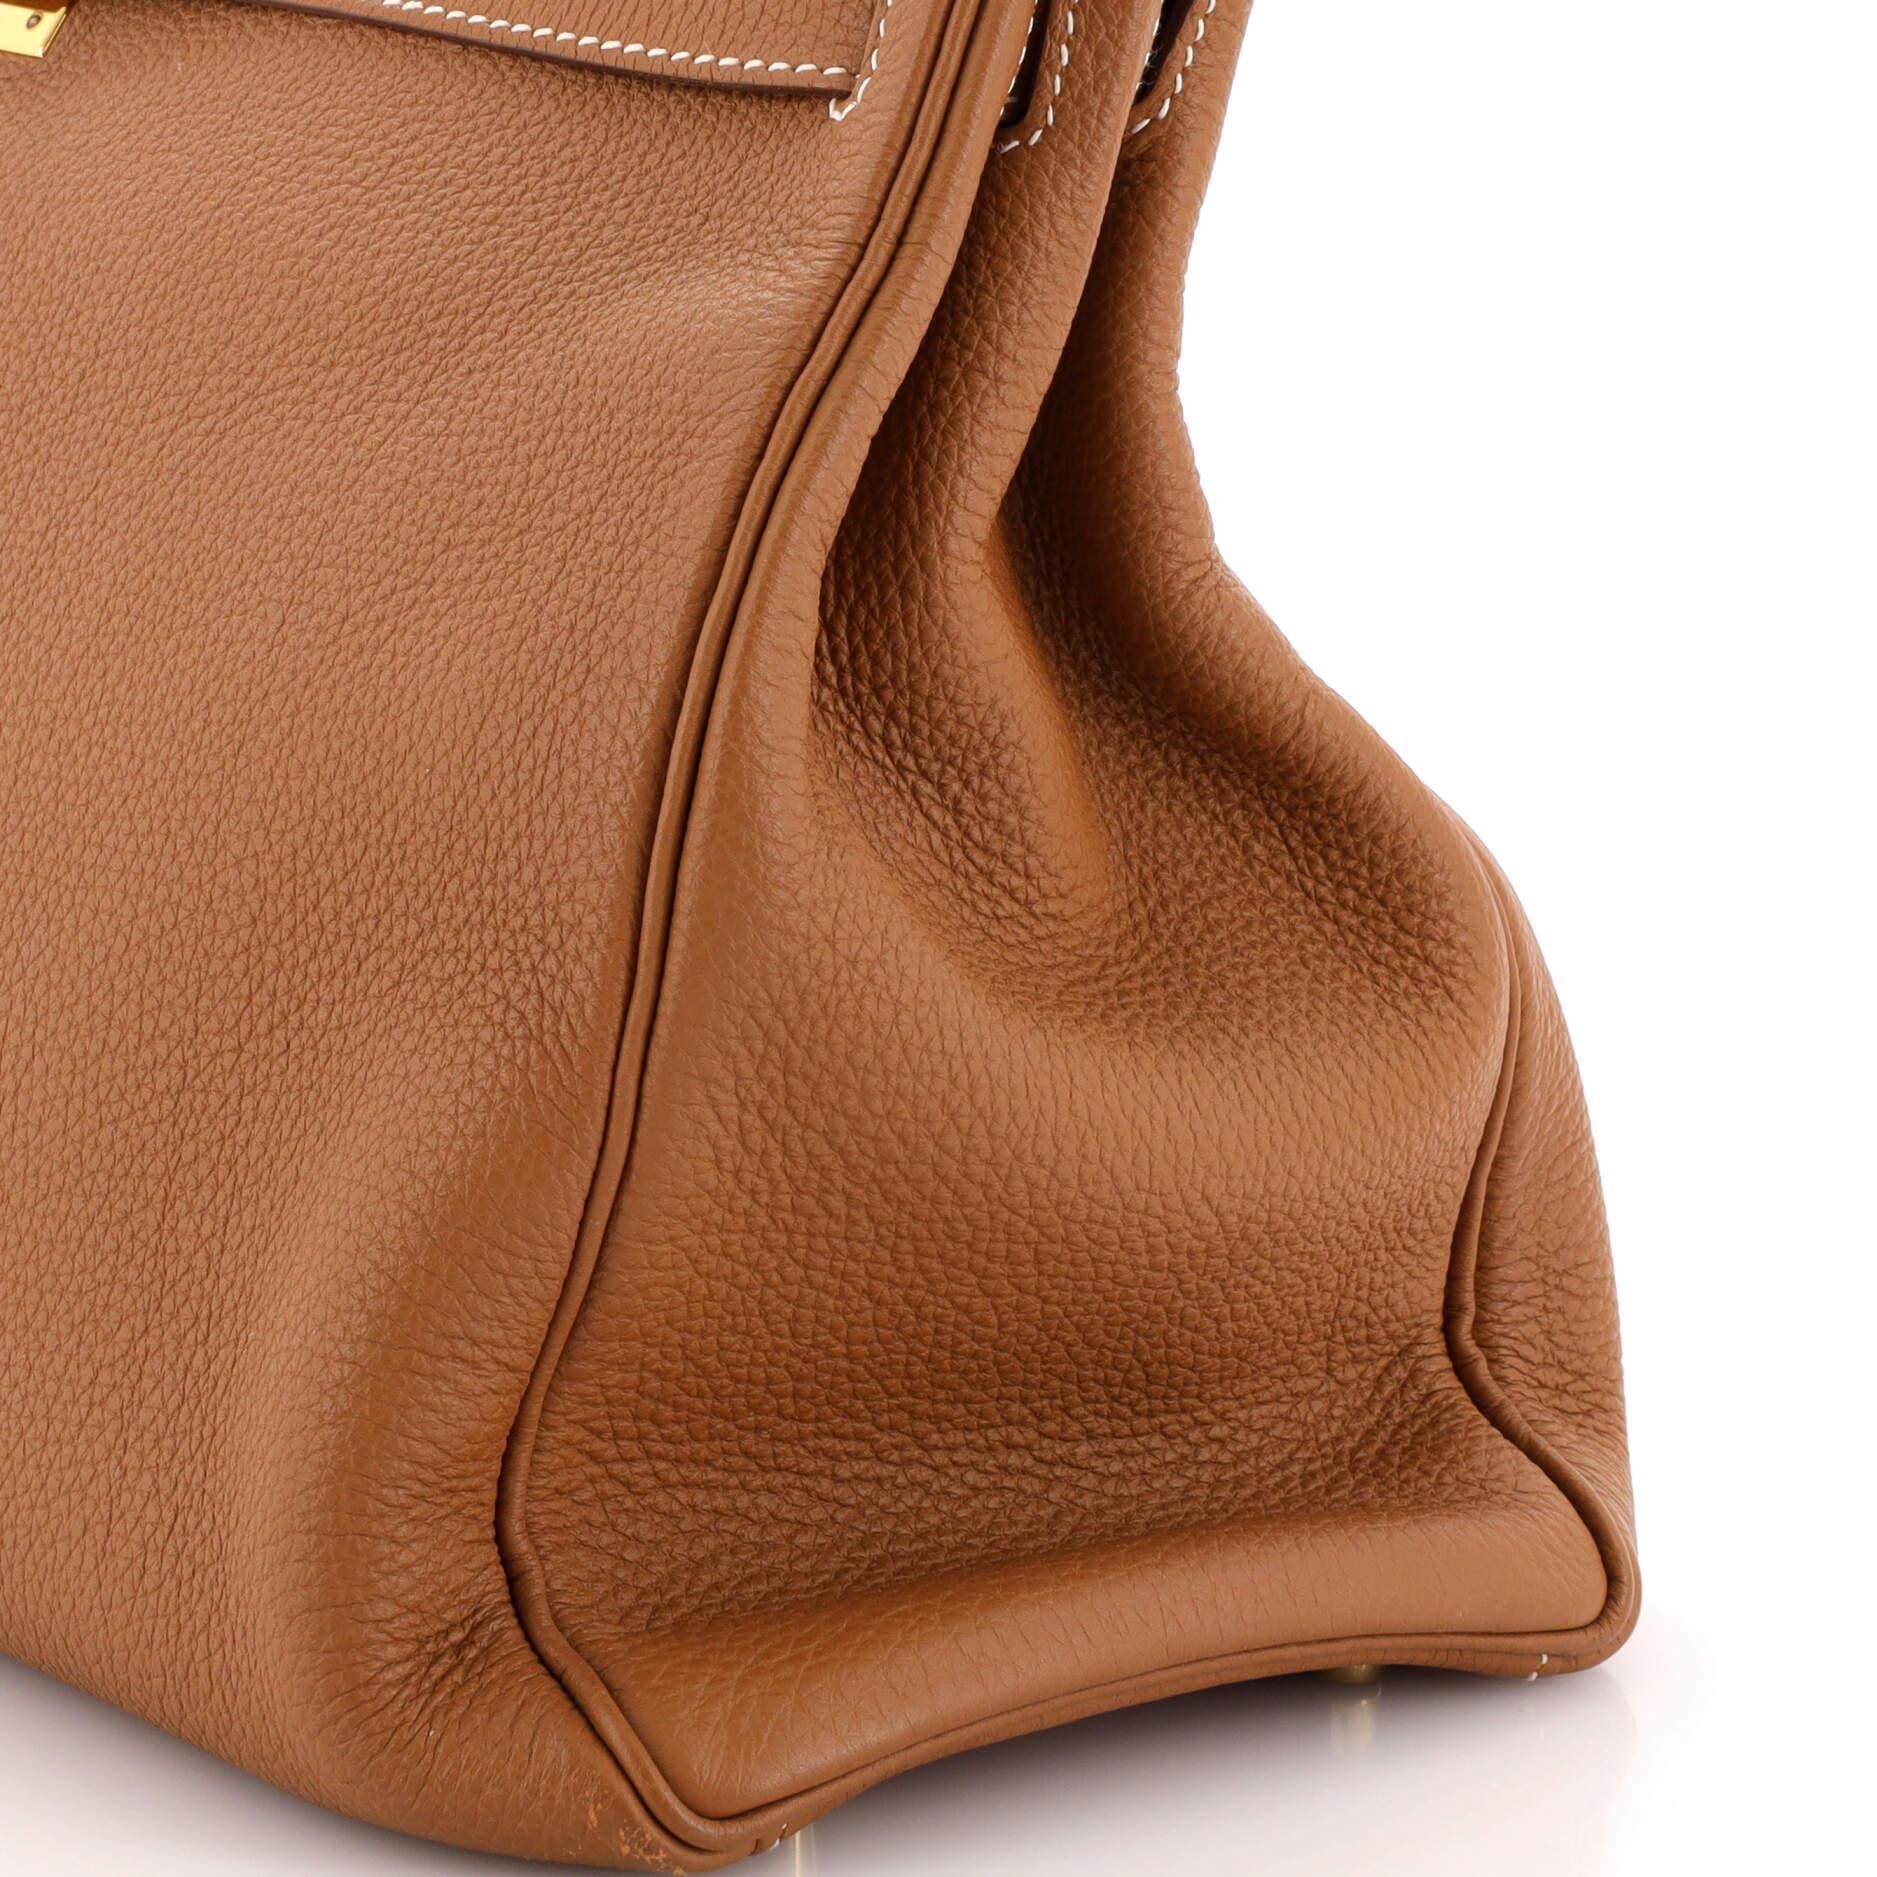 Hermes Kelly Handbag Gold Togo with Gold Hardware 35 4